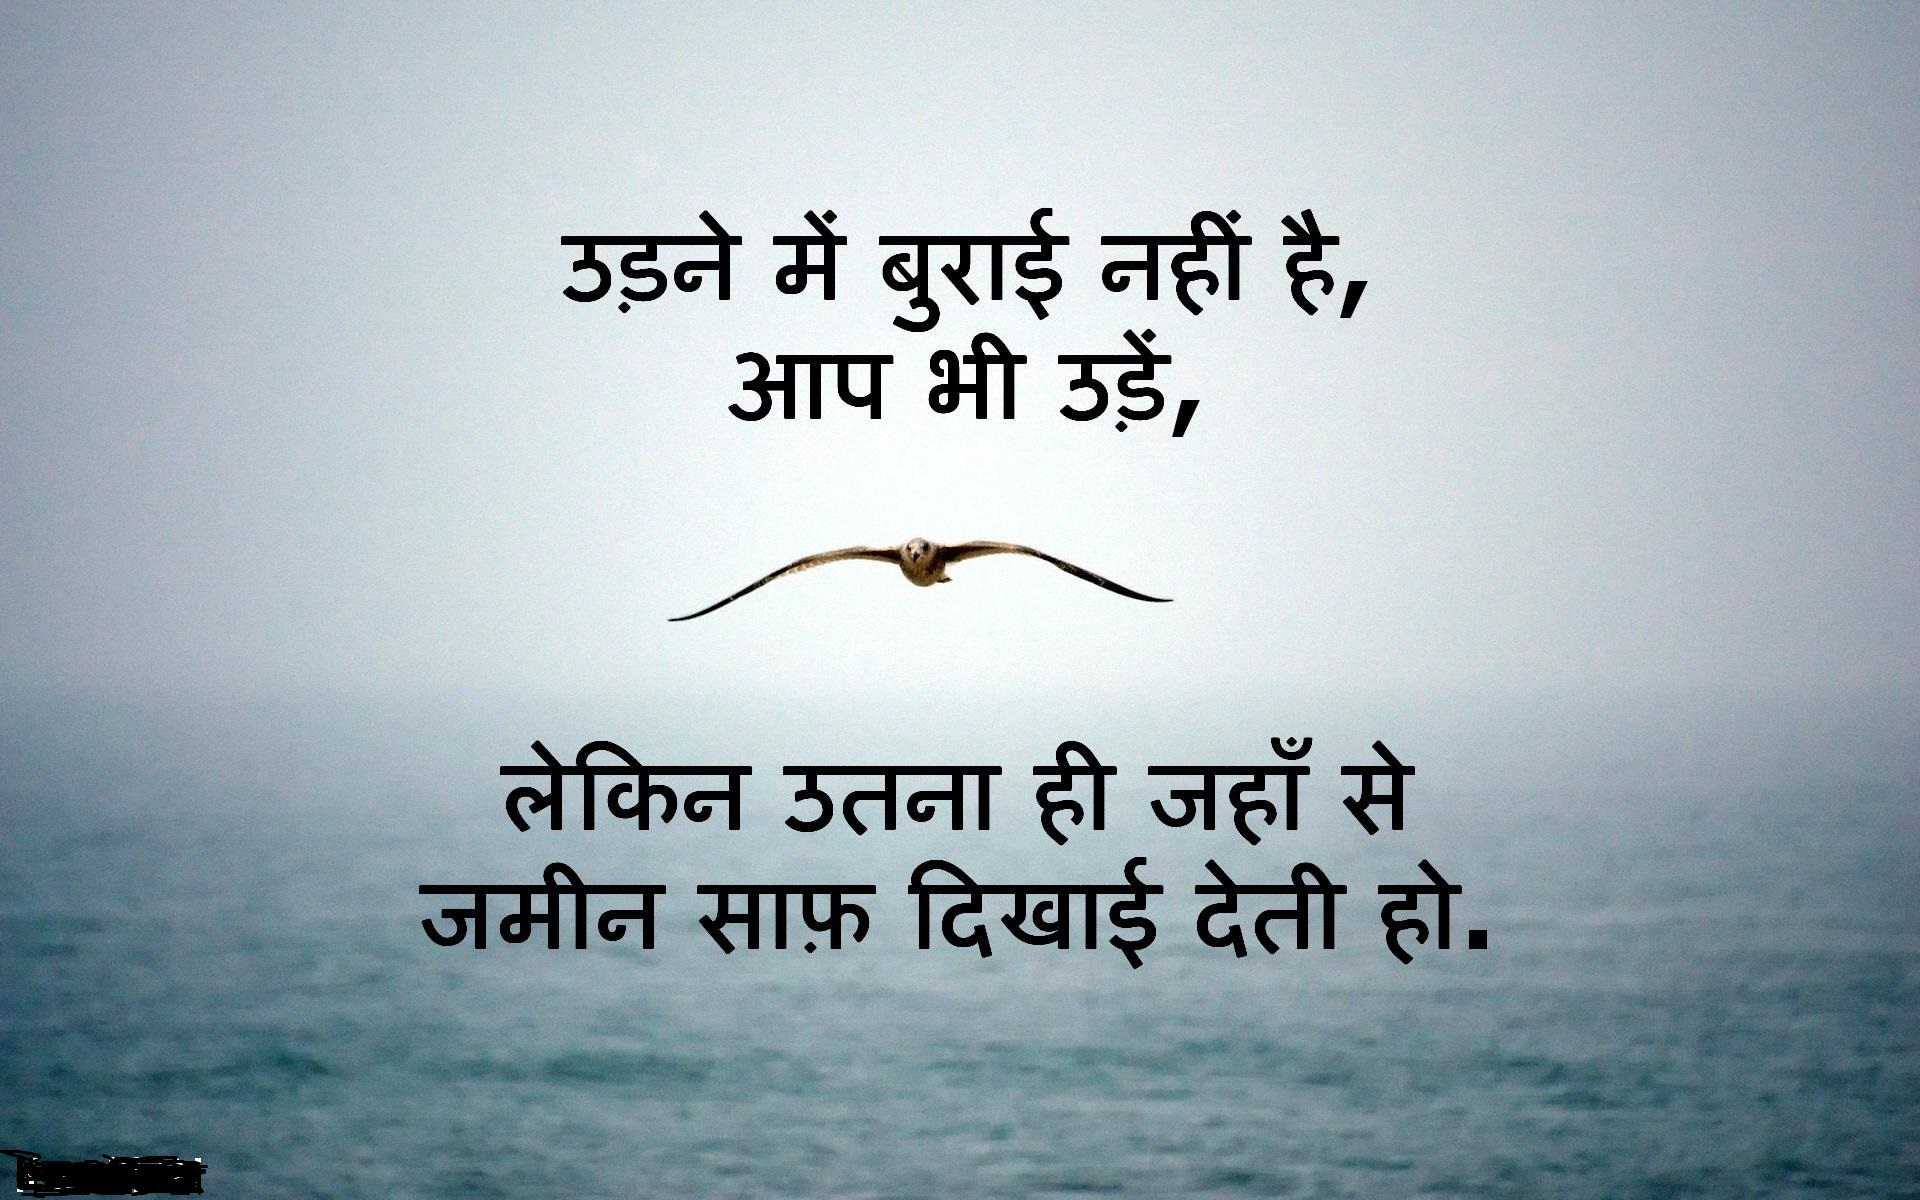 Motivational Quotes in Hindi प्रेरणादायी विचार जो आपकी जिंदगी बदलने में करेंगे मदद, जरूर पढ़े-